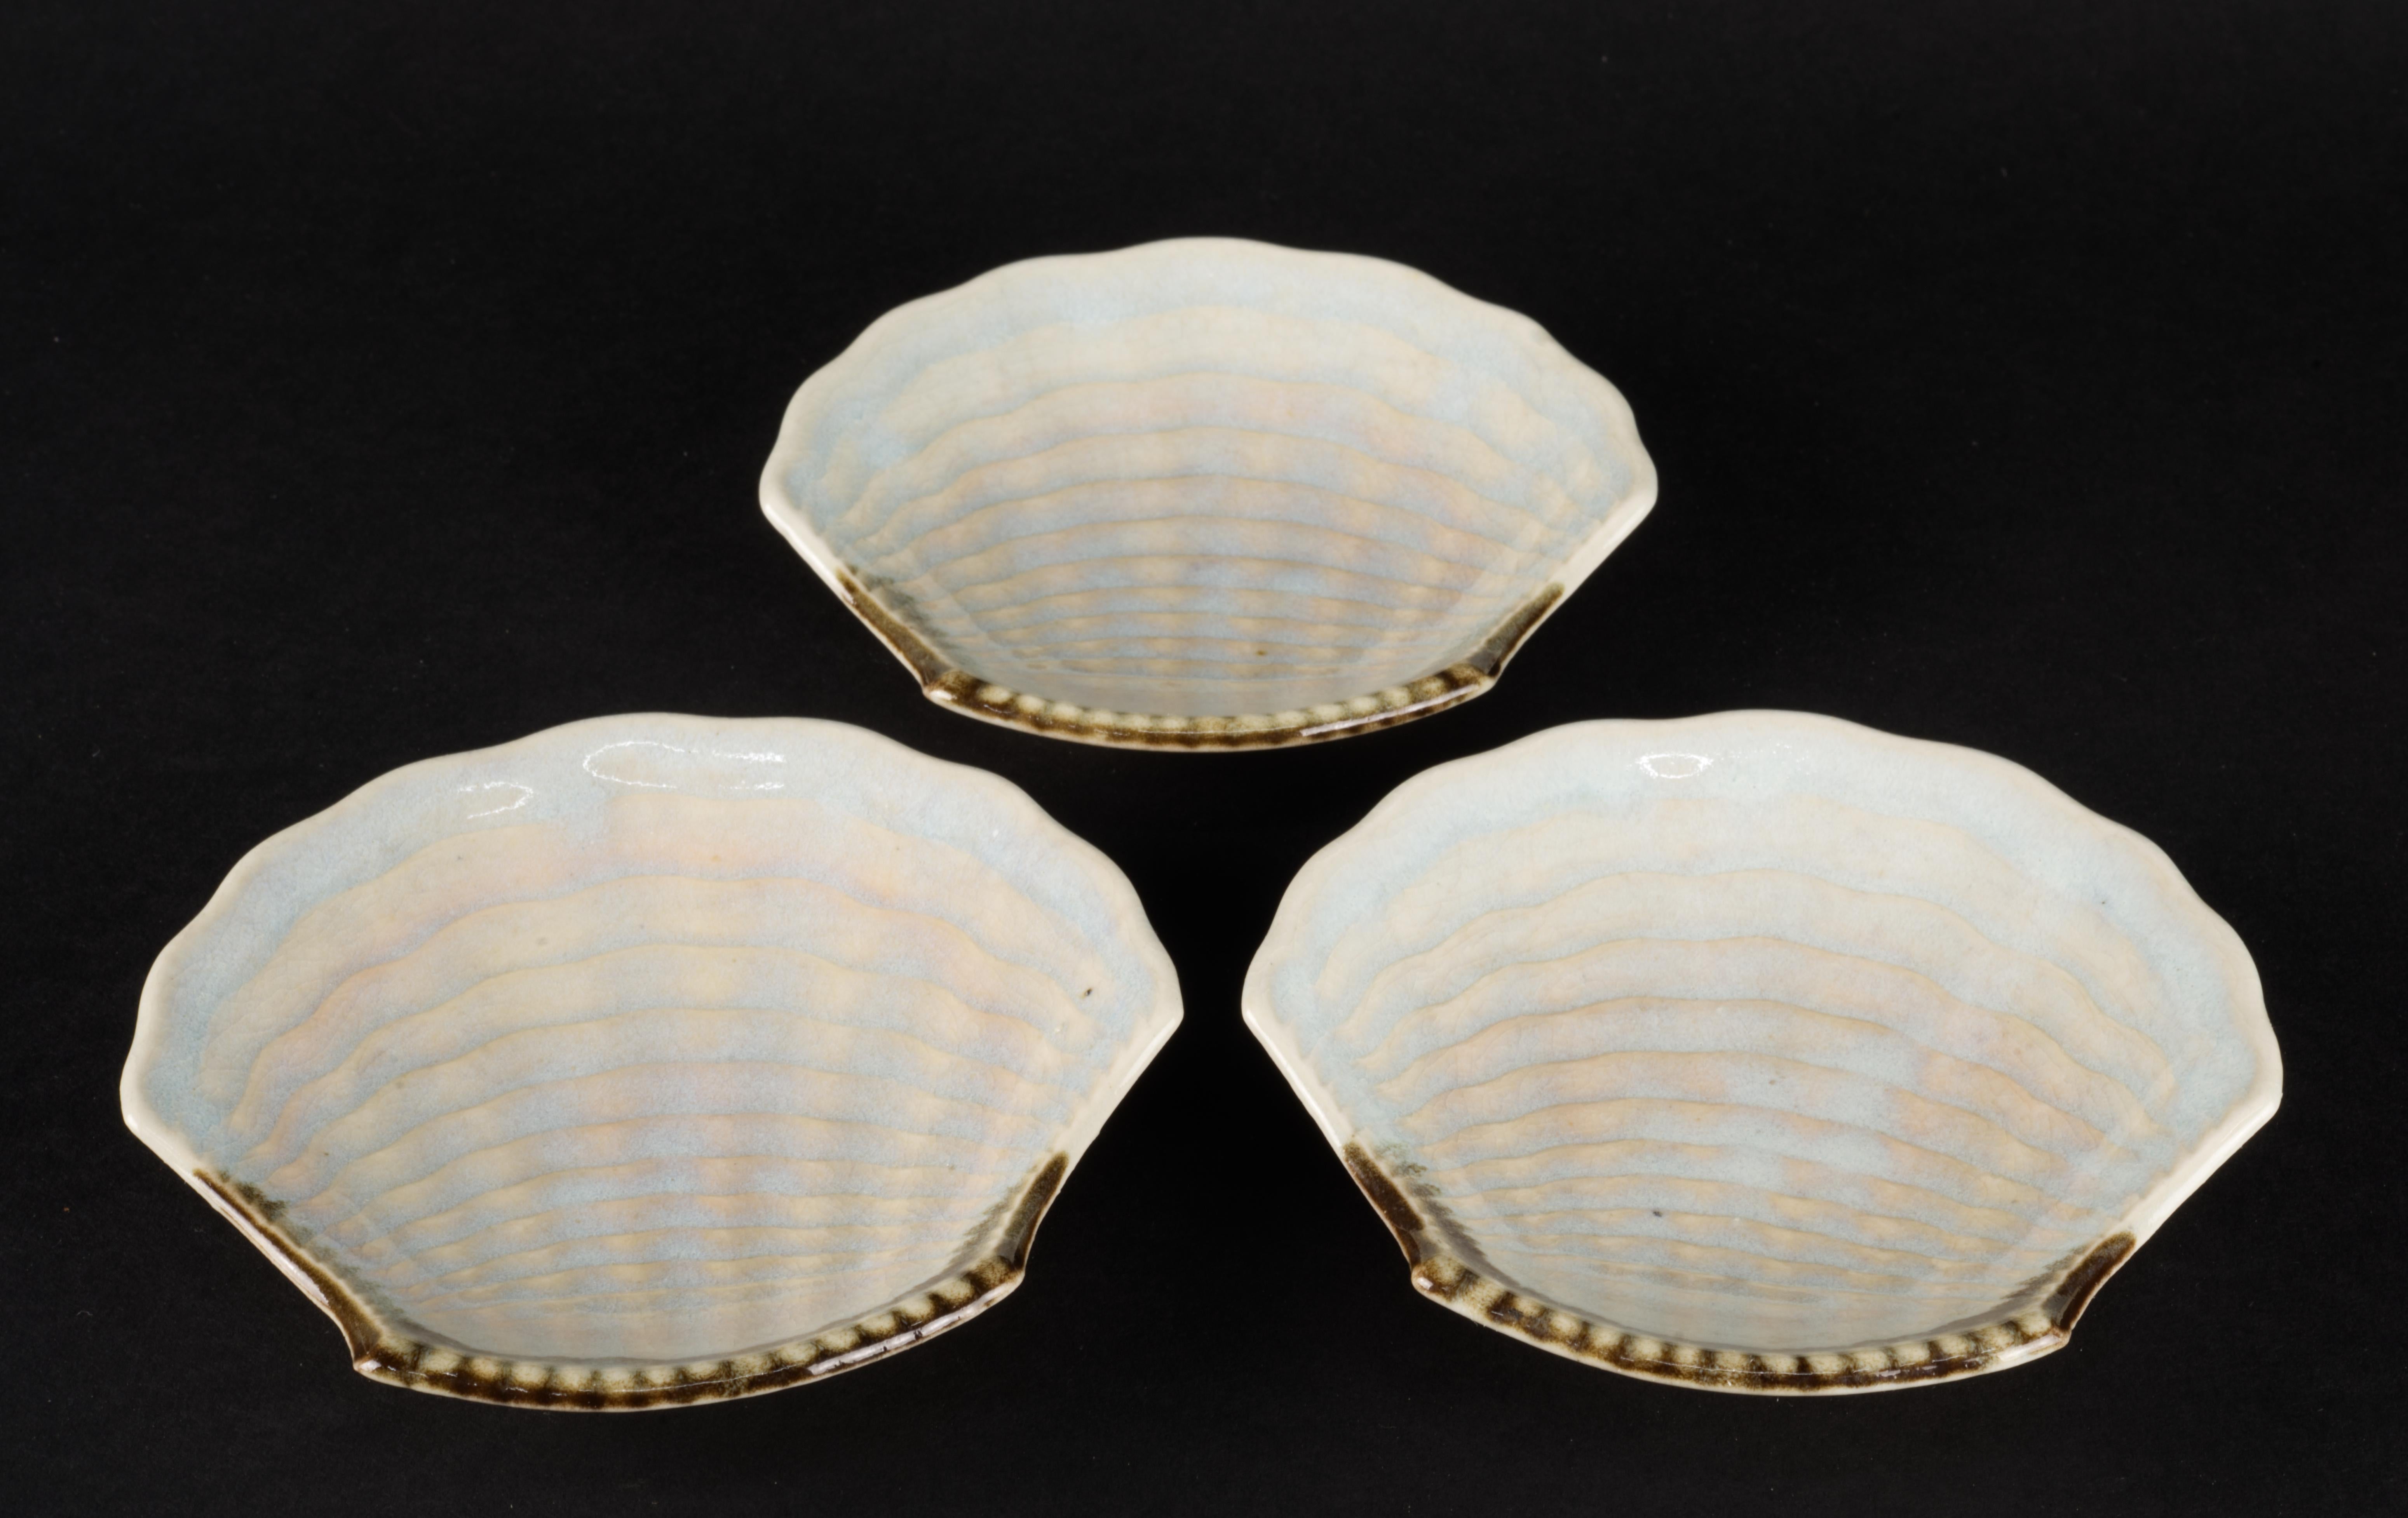 Das Set aus 3 kleinen muschelförmigen Tellern oder Schalen ist von Hand mit Craquelé-Glasur in Blau- und Beigetönen mit asymmetrischem, erdbraunem Akzent verziert. Die strukturierten Oberflächen der Schalen werden durch den kreativen Einsatz von